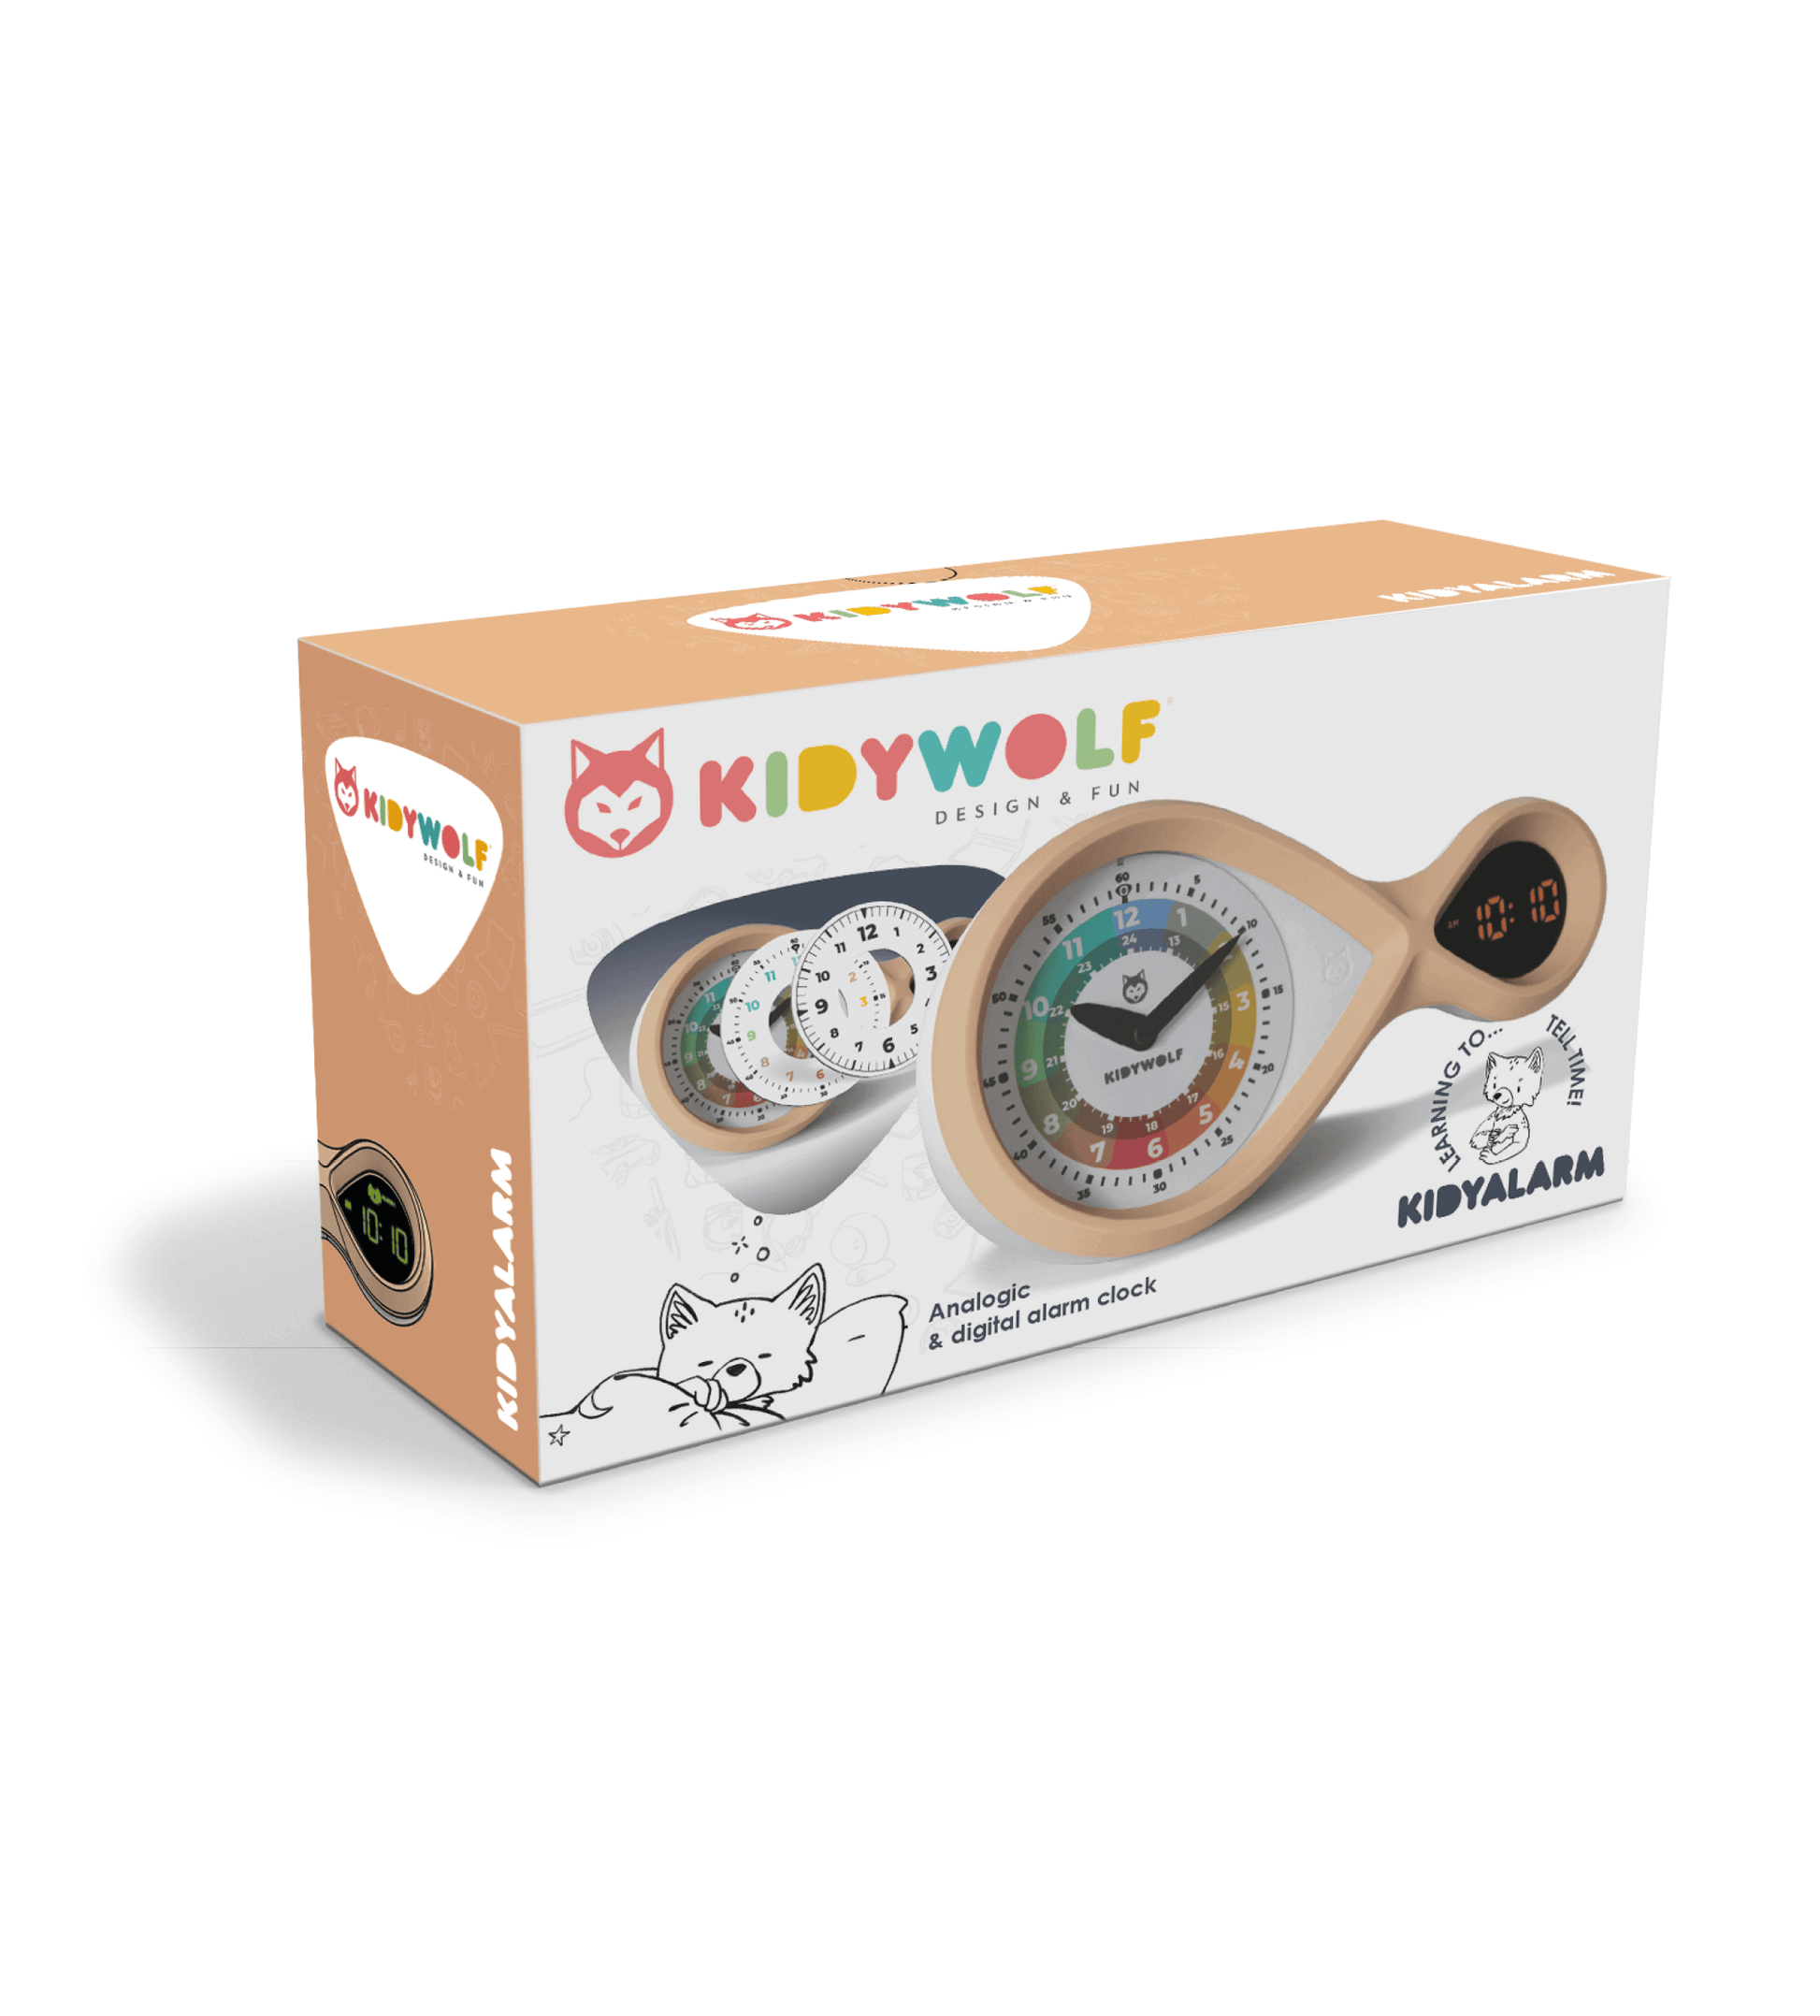 kidywolf kidyalarm bronze roze educatieve wekker kinderen kinderalam clock cadeau kerst kind verpakking